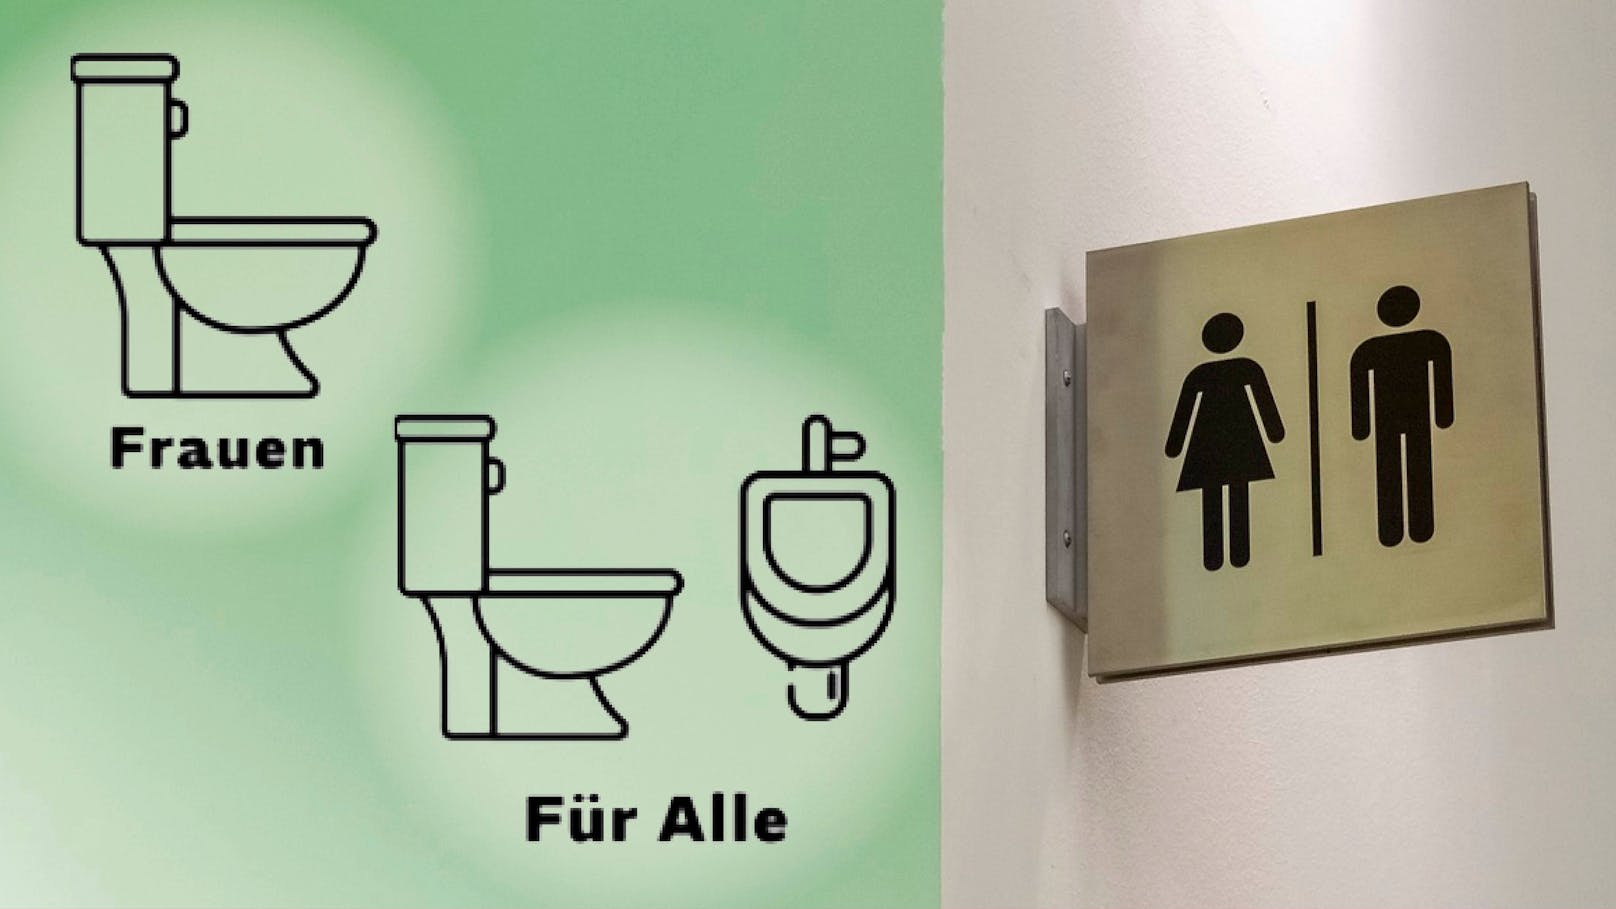 Mithilfe des Piktogramms (links) soll die Toilettensituation zwischenzeitlich entschärft werden.